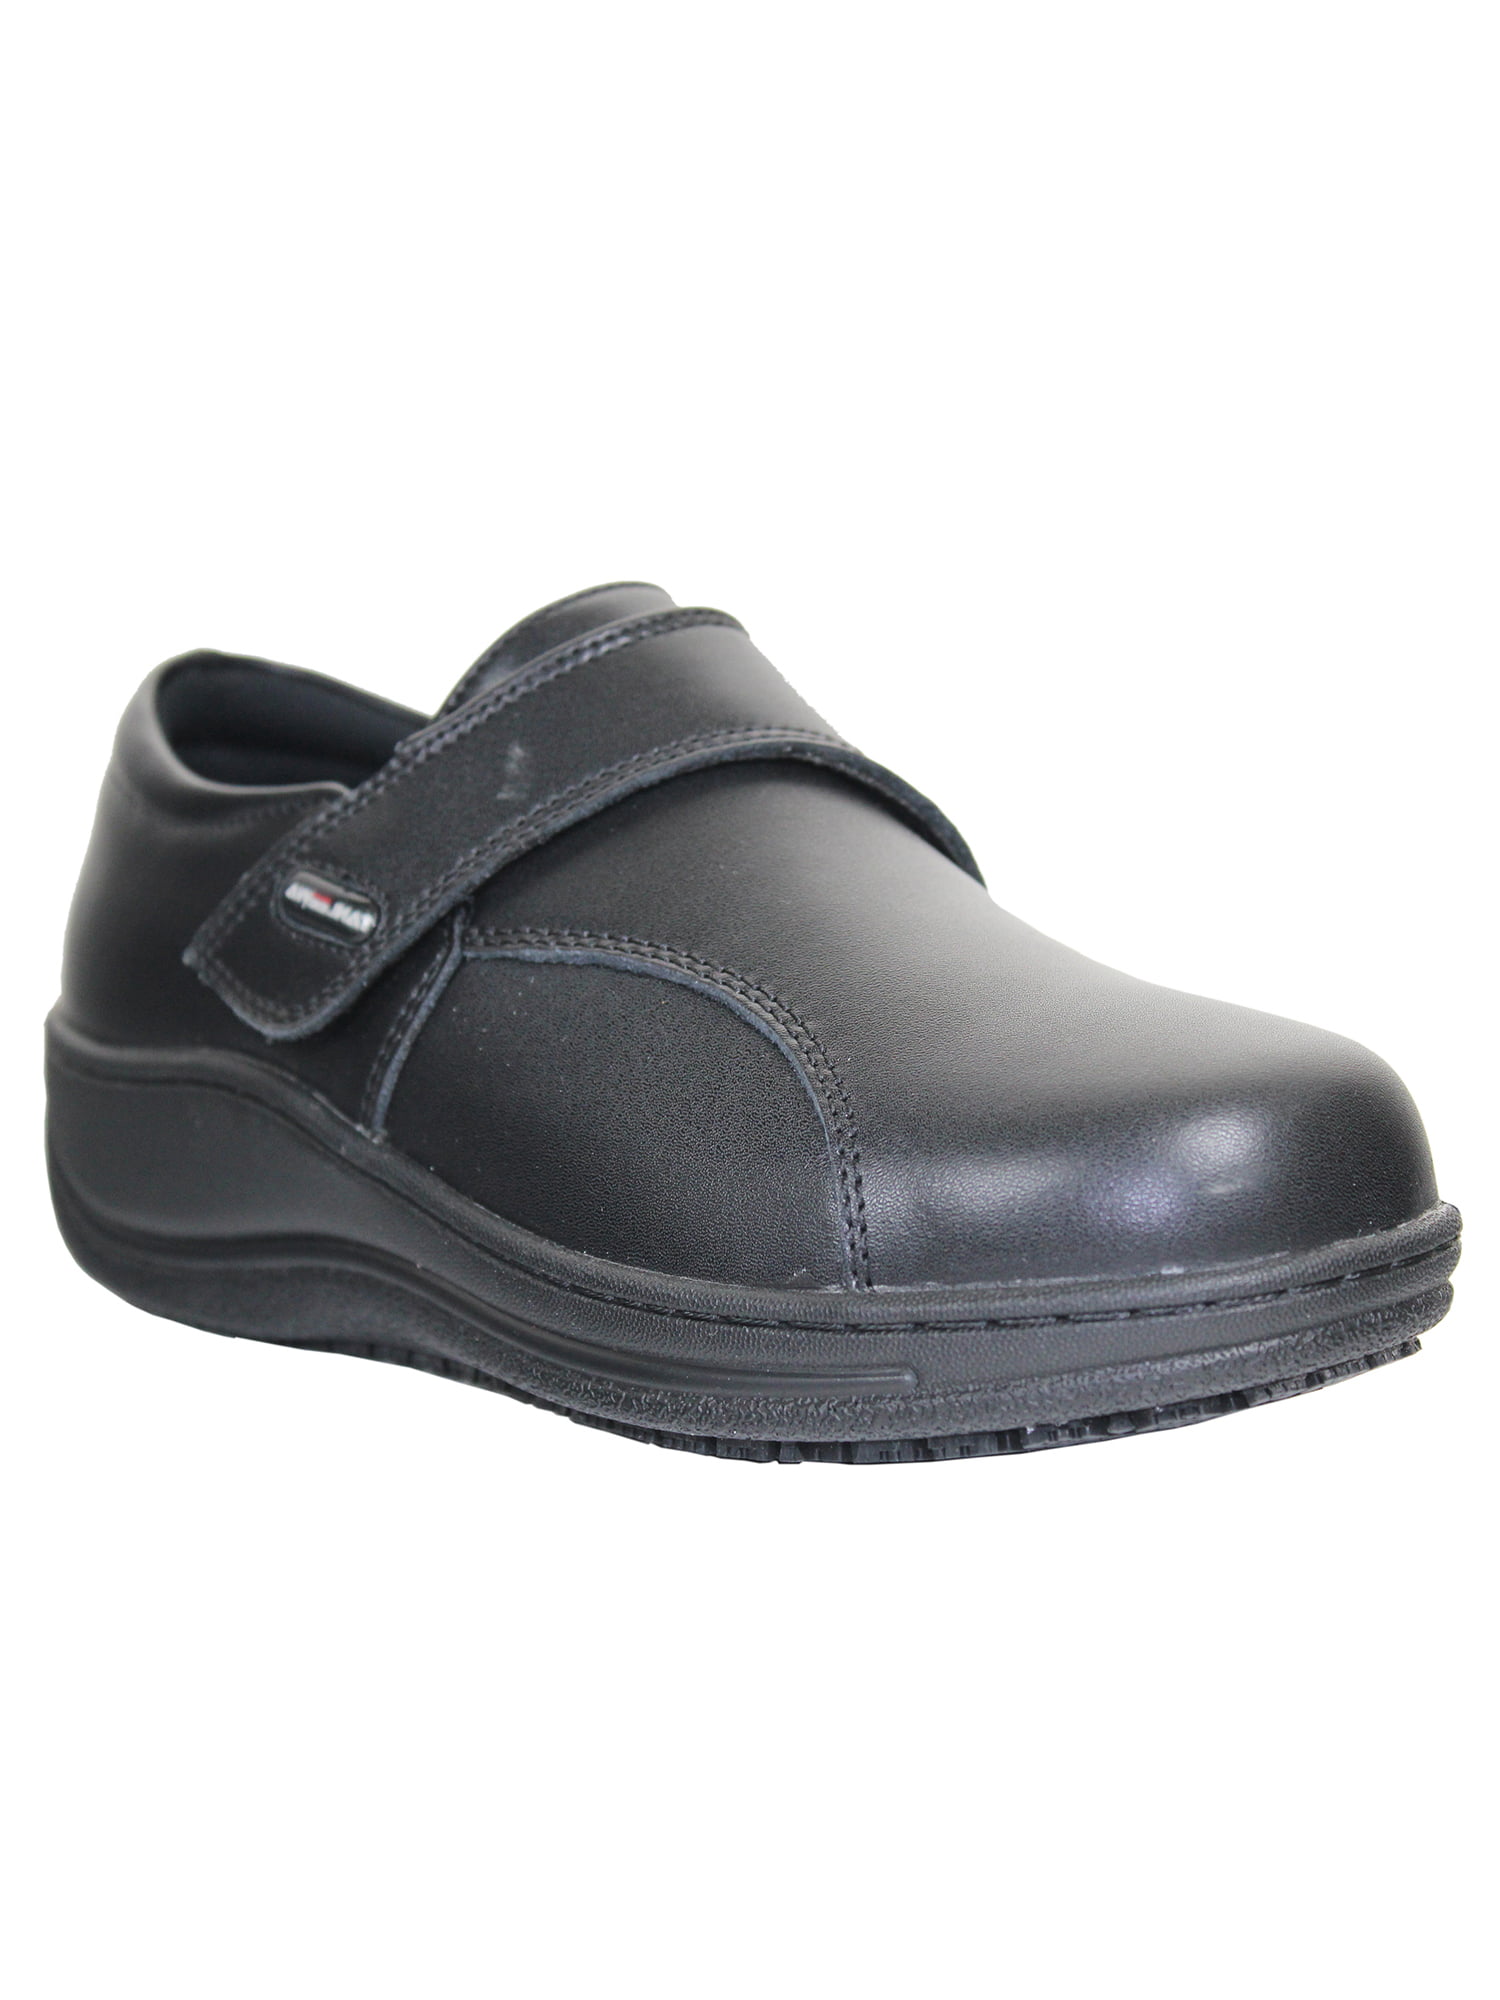 Tanleewa Women Slip Safety Work Shoes Waterproof Leather Shoe Size 7.5 Adult Male - Walmart.com